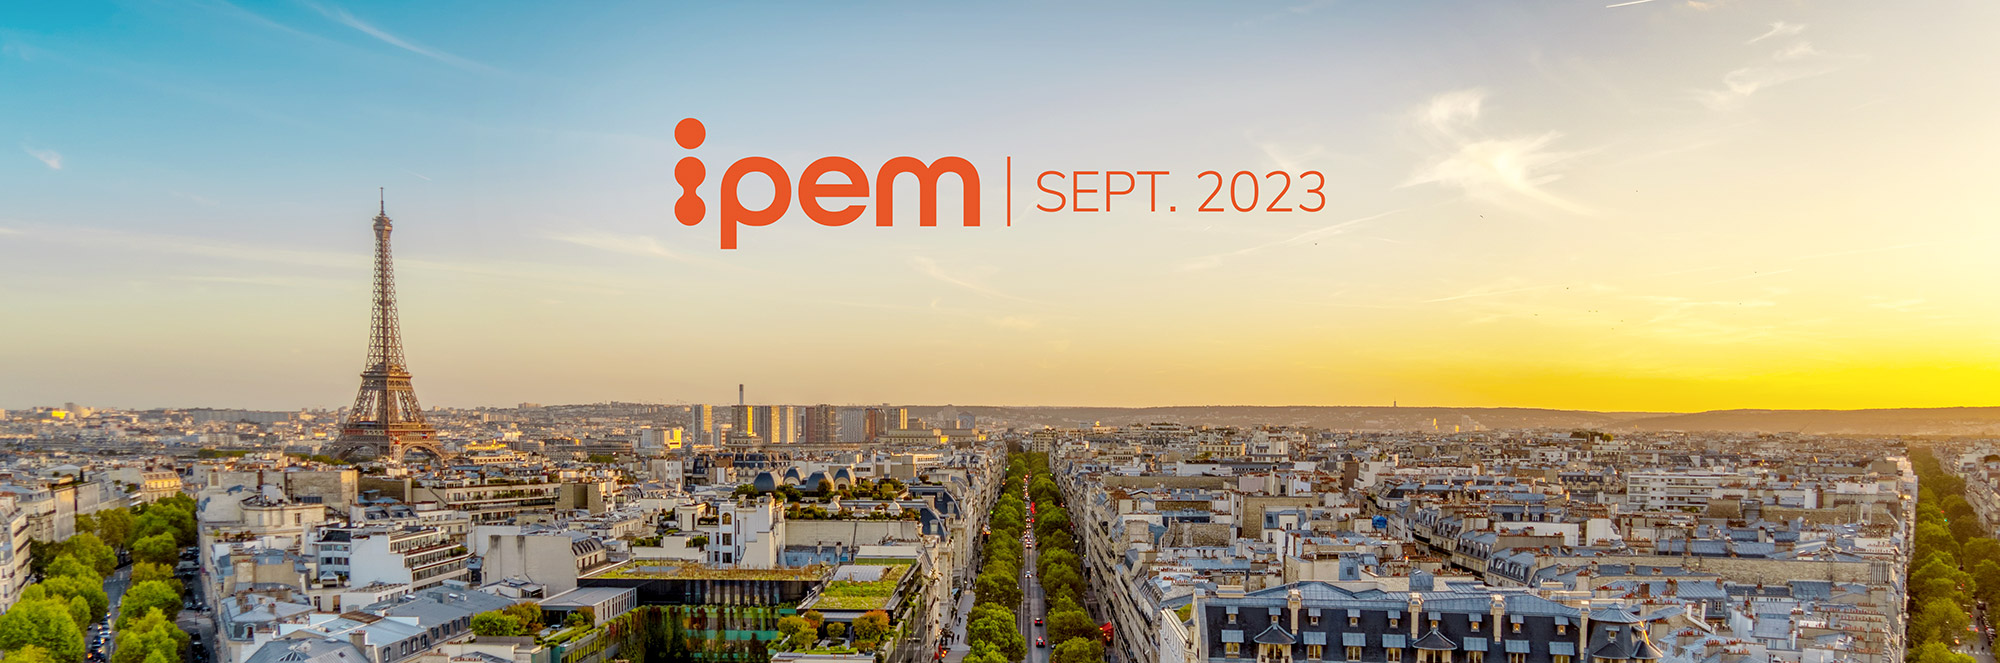 IPEM Paris Sept. 2023